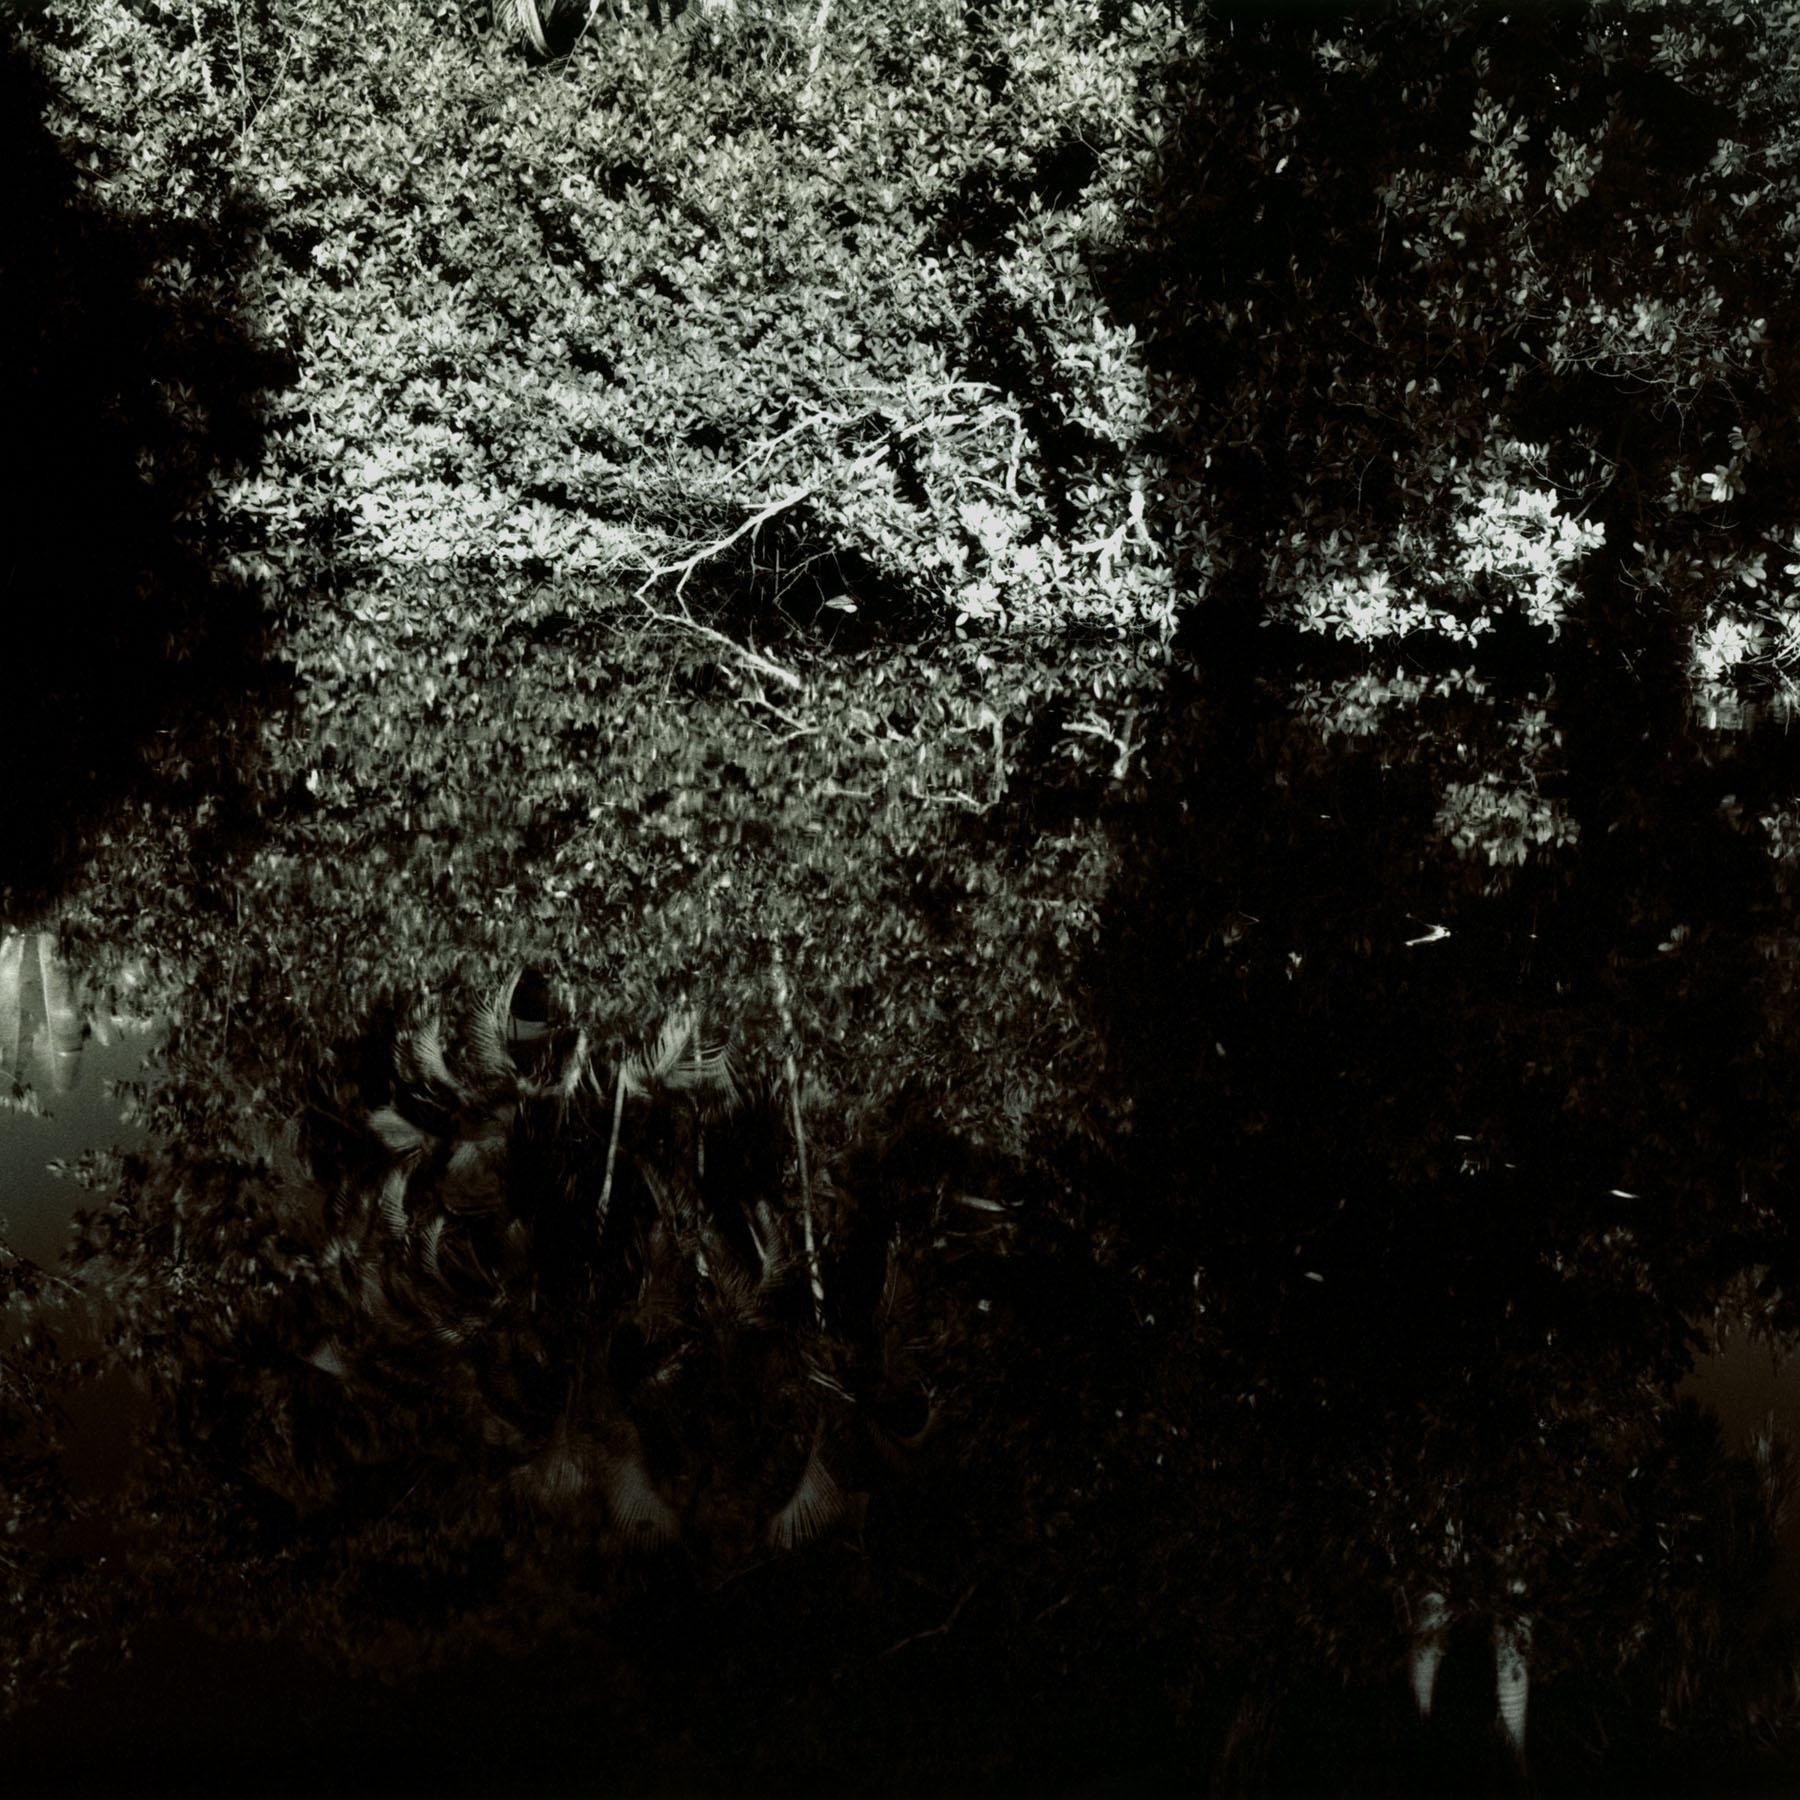 Reflection Study – Schwarz-Weiß-Landschaftsfotografie in limitierter Auflage aus Florida